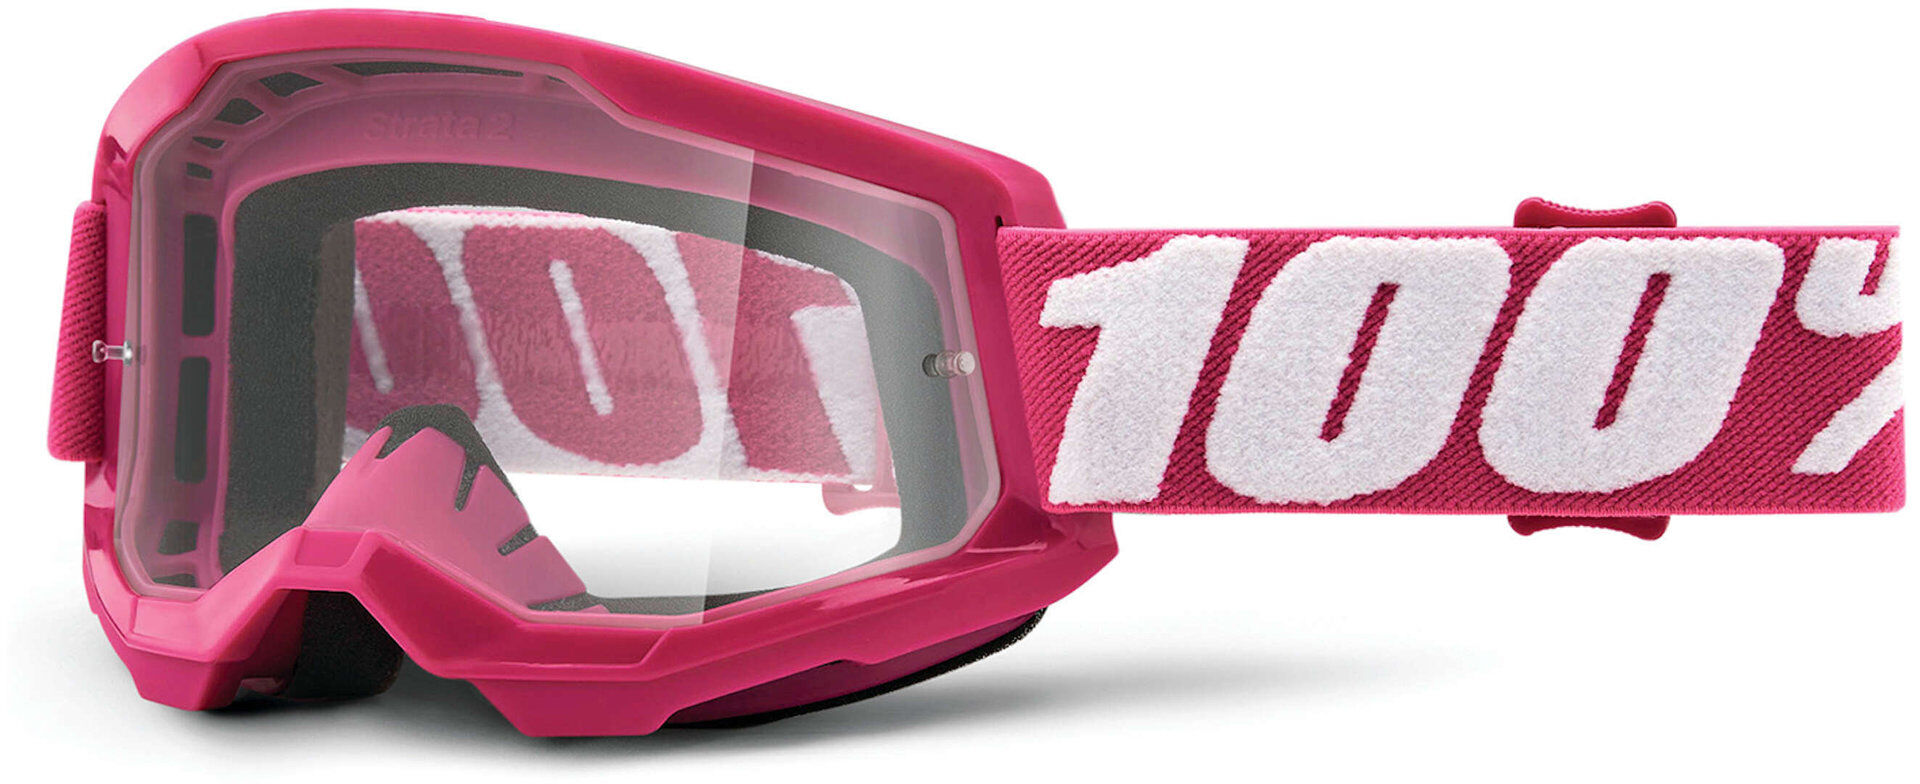 100% Strata 2 Clear Gafas de motocross - Blanco Rosa (un tamaño)